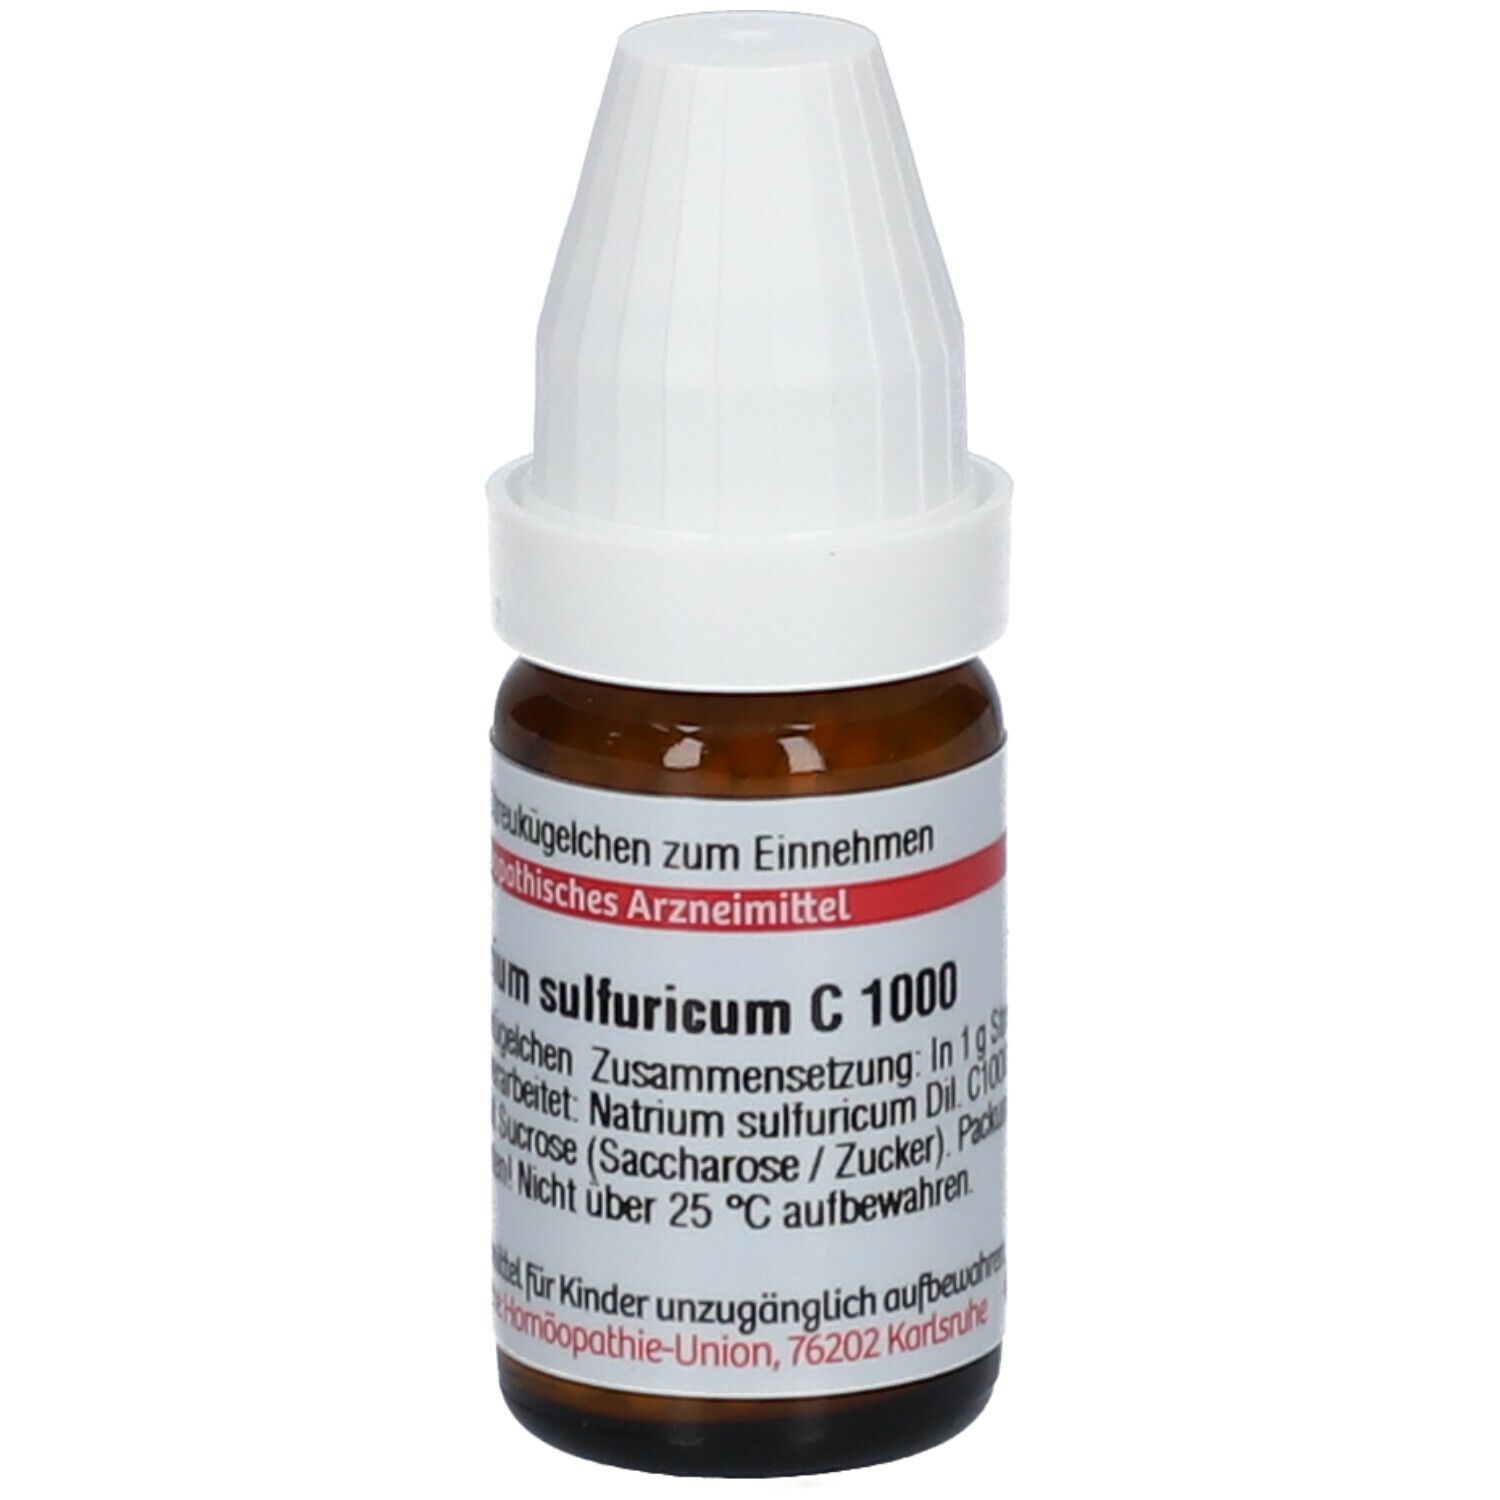 DHU Natrium Sulfuricum C1000